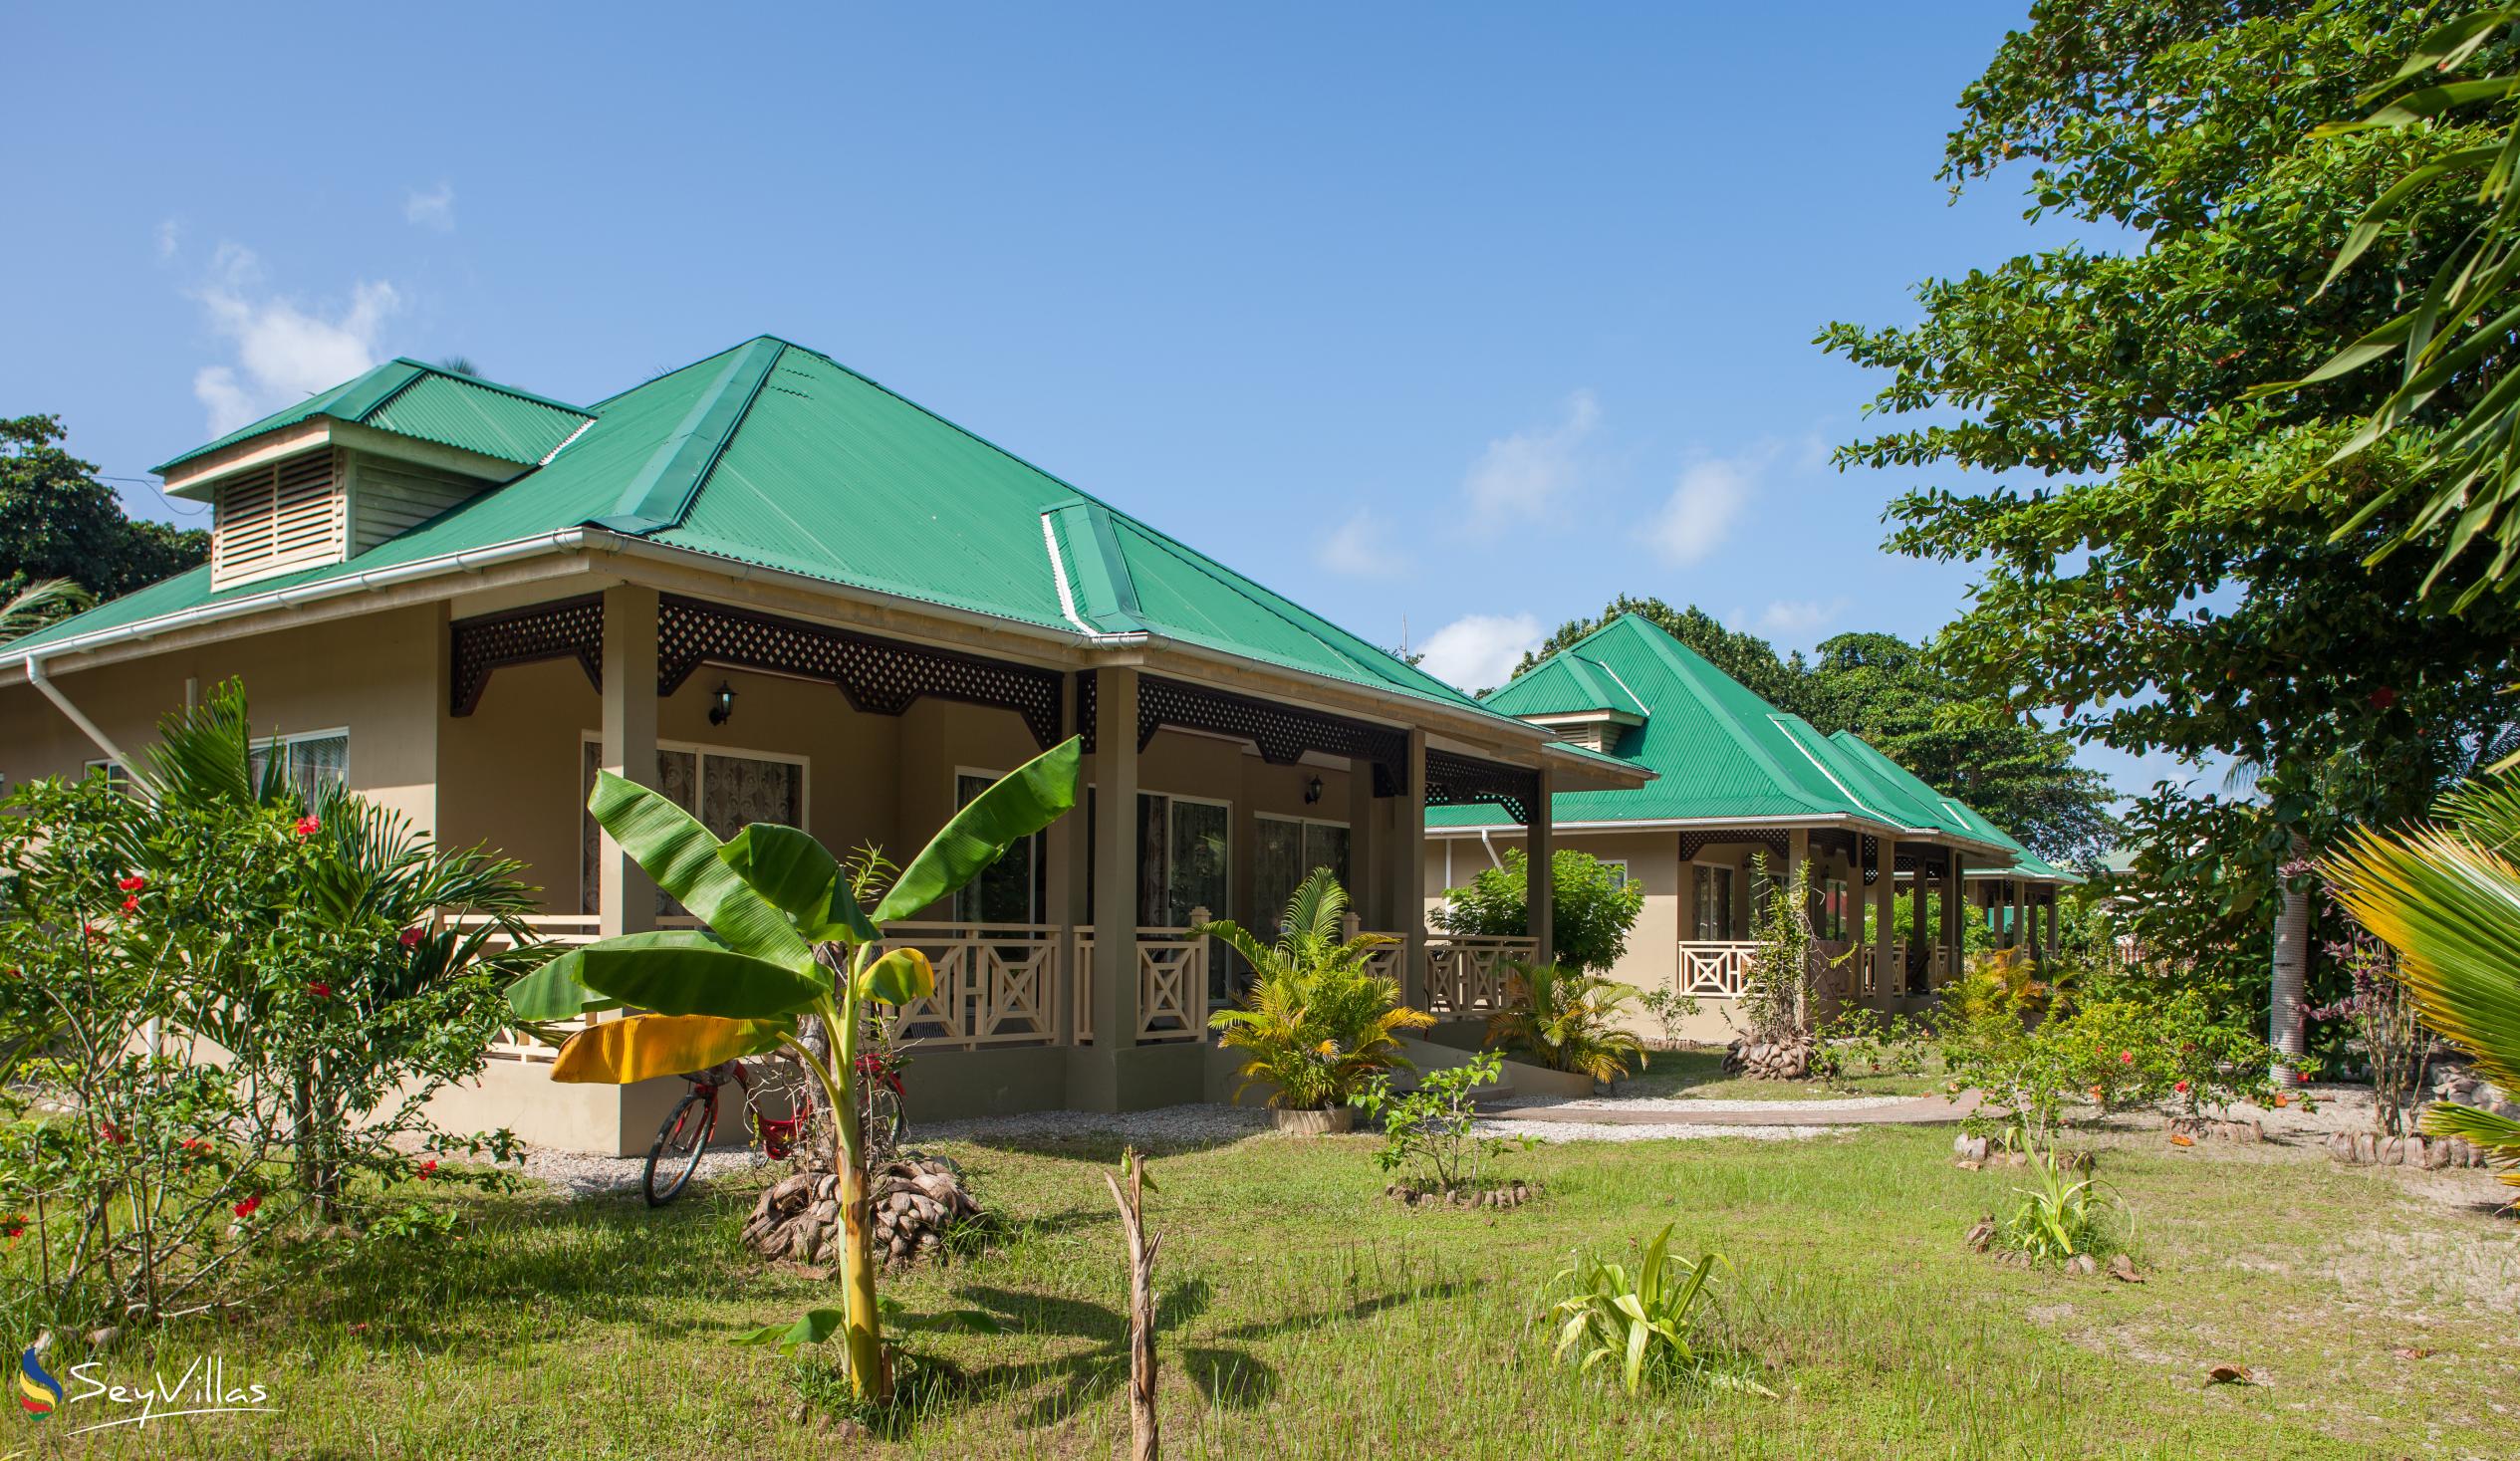 Photo 1: Hostellerie La Digue - Outdoor area - La Digue (Seychelles)